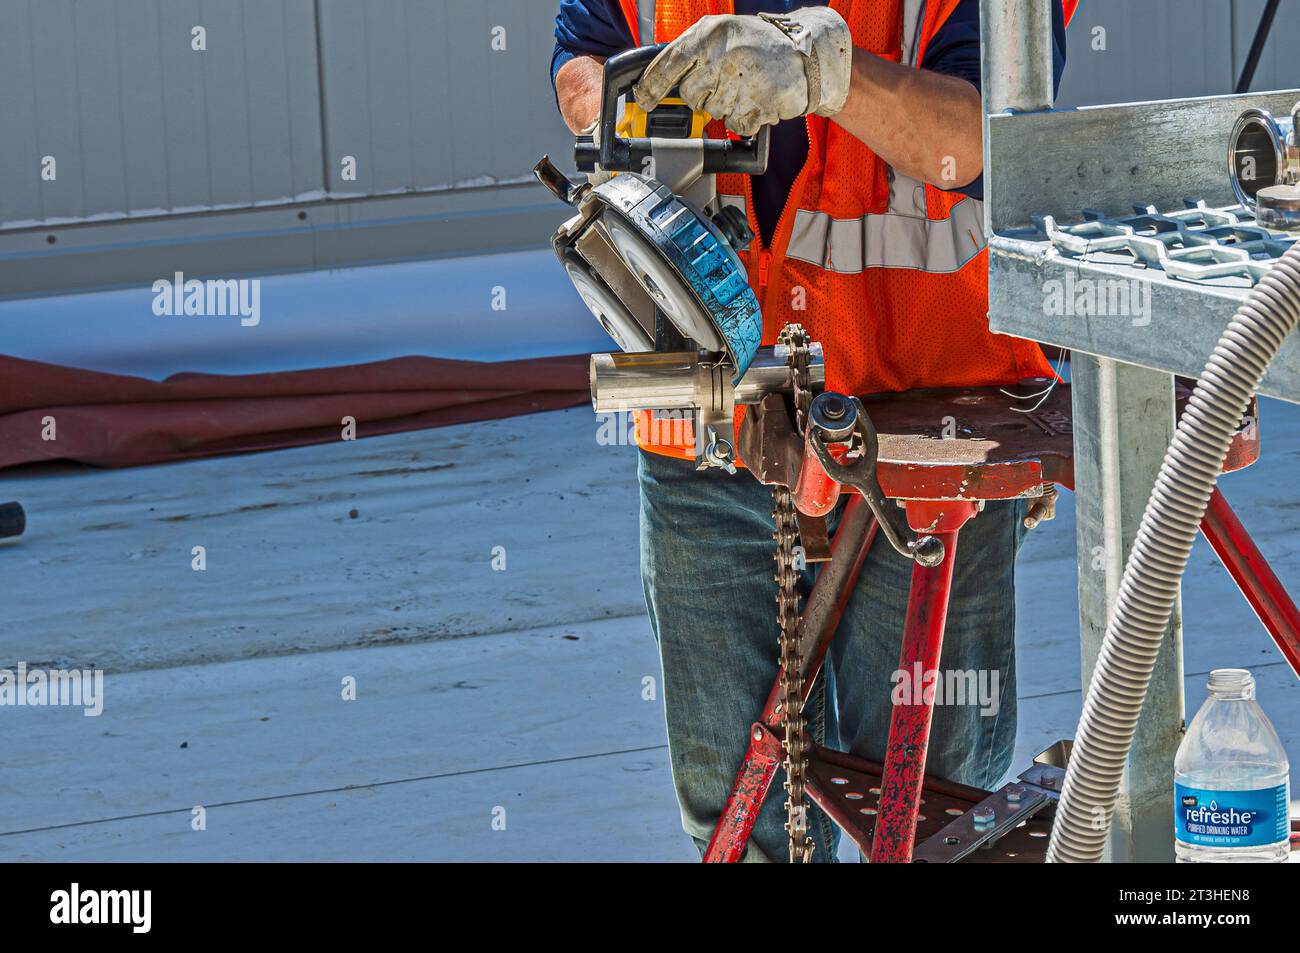 Un travailleur de la construction utilise une scie à ruban portative pour couper des tuyaux en acier inoxydable sur le toit d'une installation de réfrigération industrielle (entreposage frigorifique). Banque D'Images